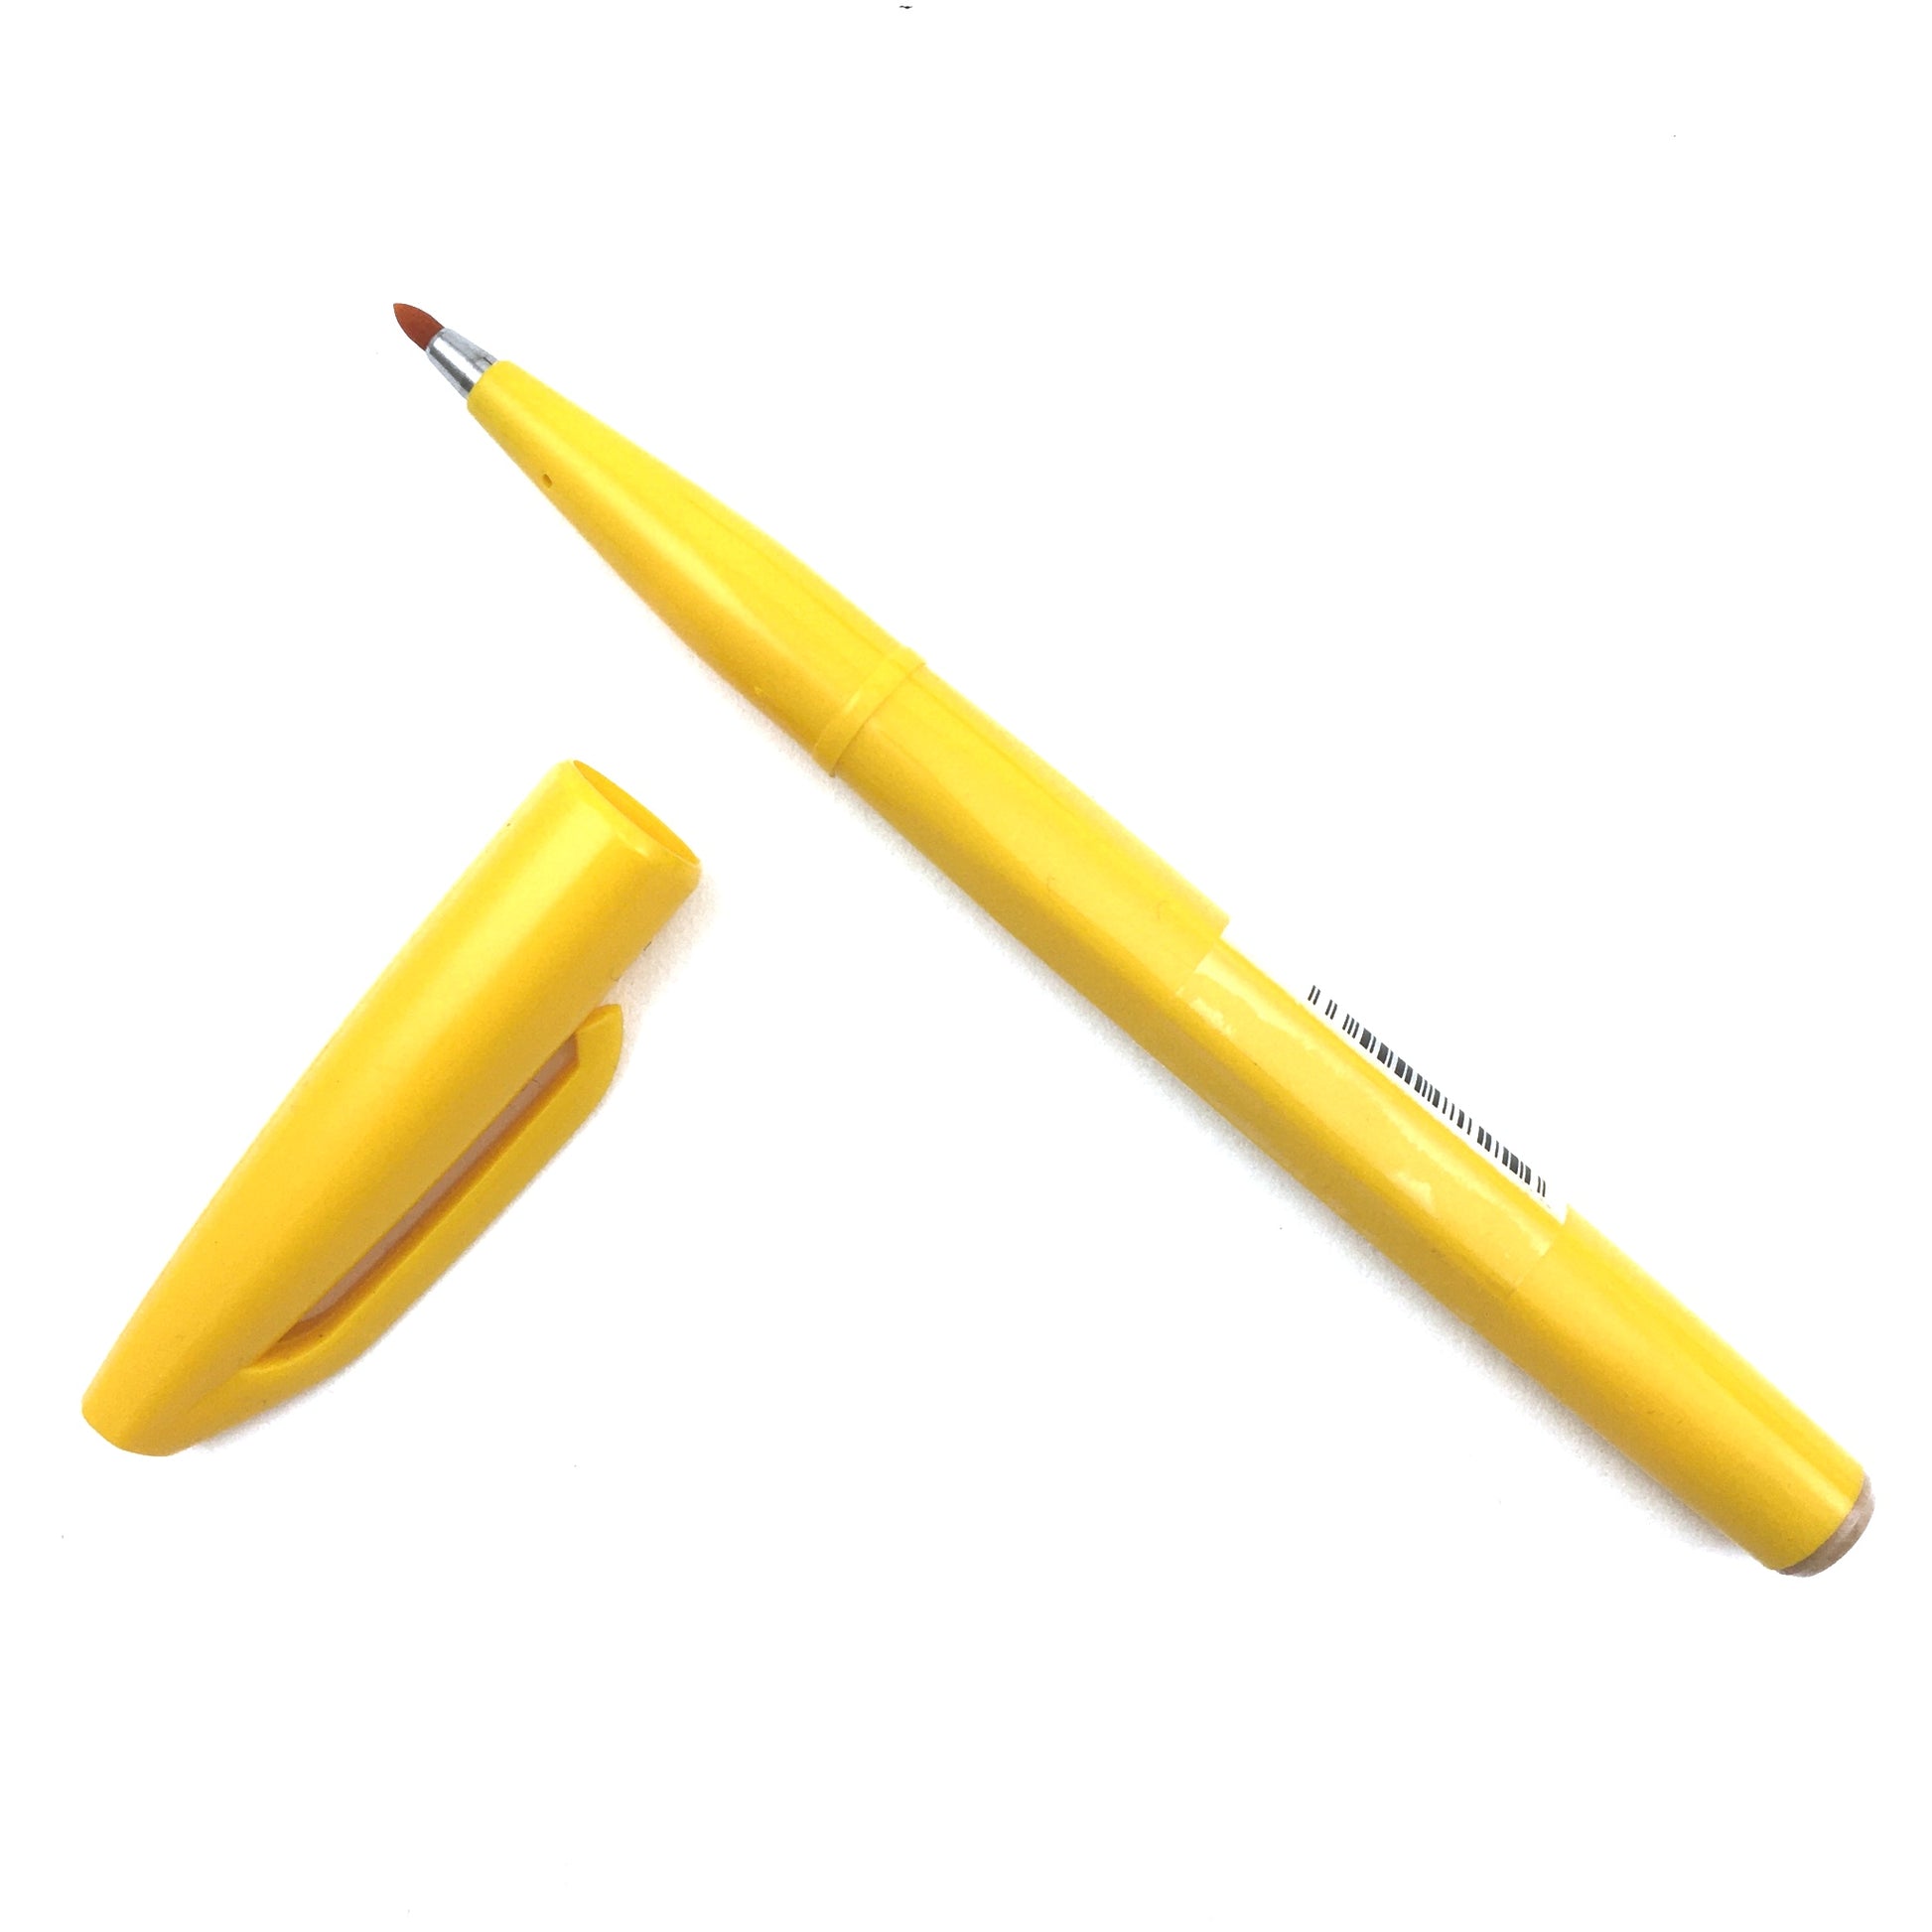 Pentel Sign Pen with Fiber Tip - Yellow by Pentel - K. A. Artist Shop